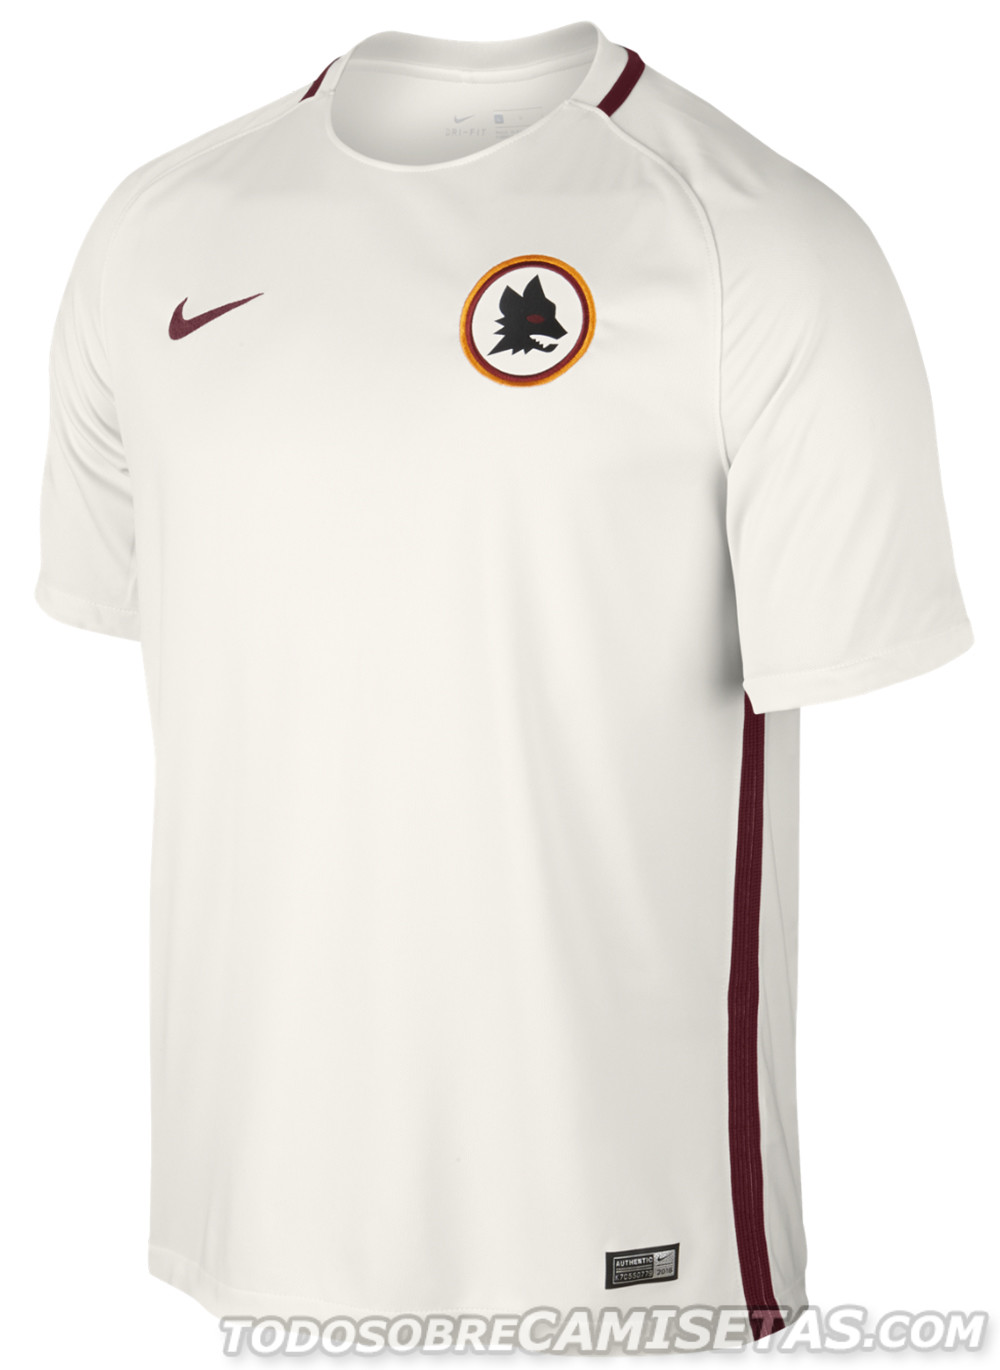 Roma 2016-17 Nike away kit